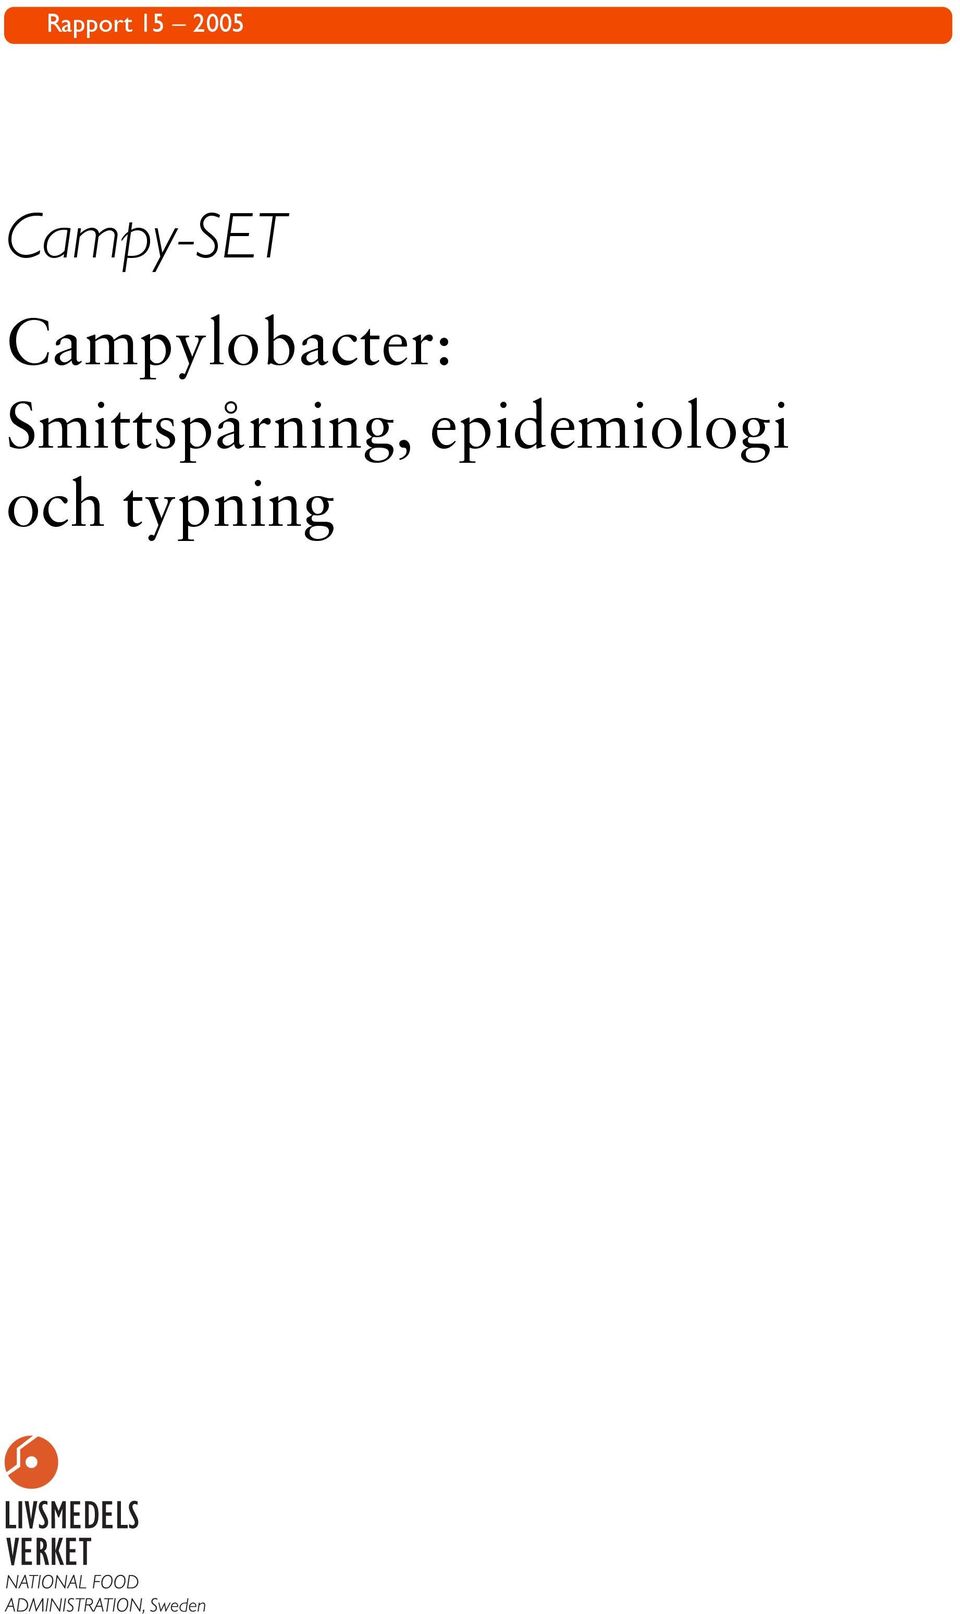 Campylobacter: